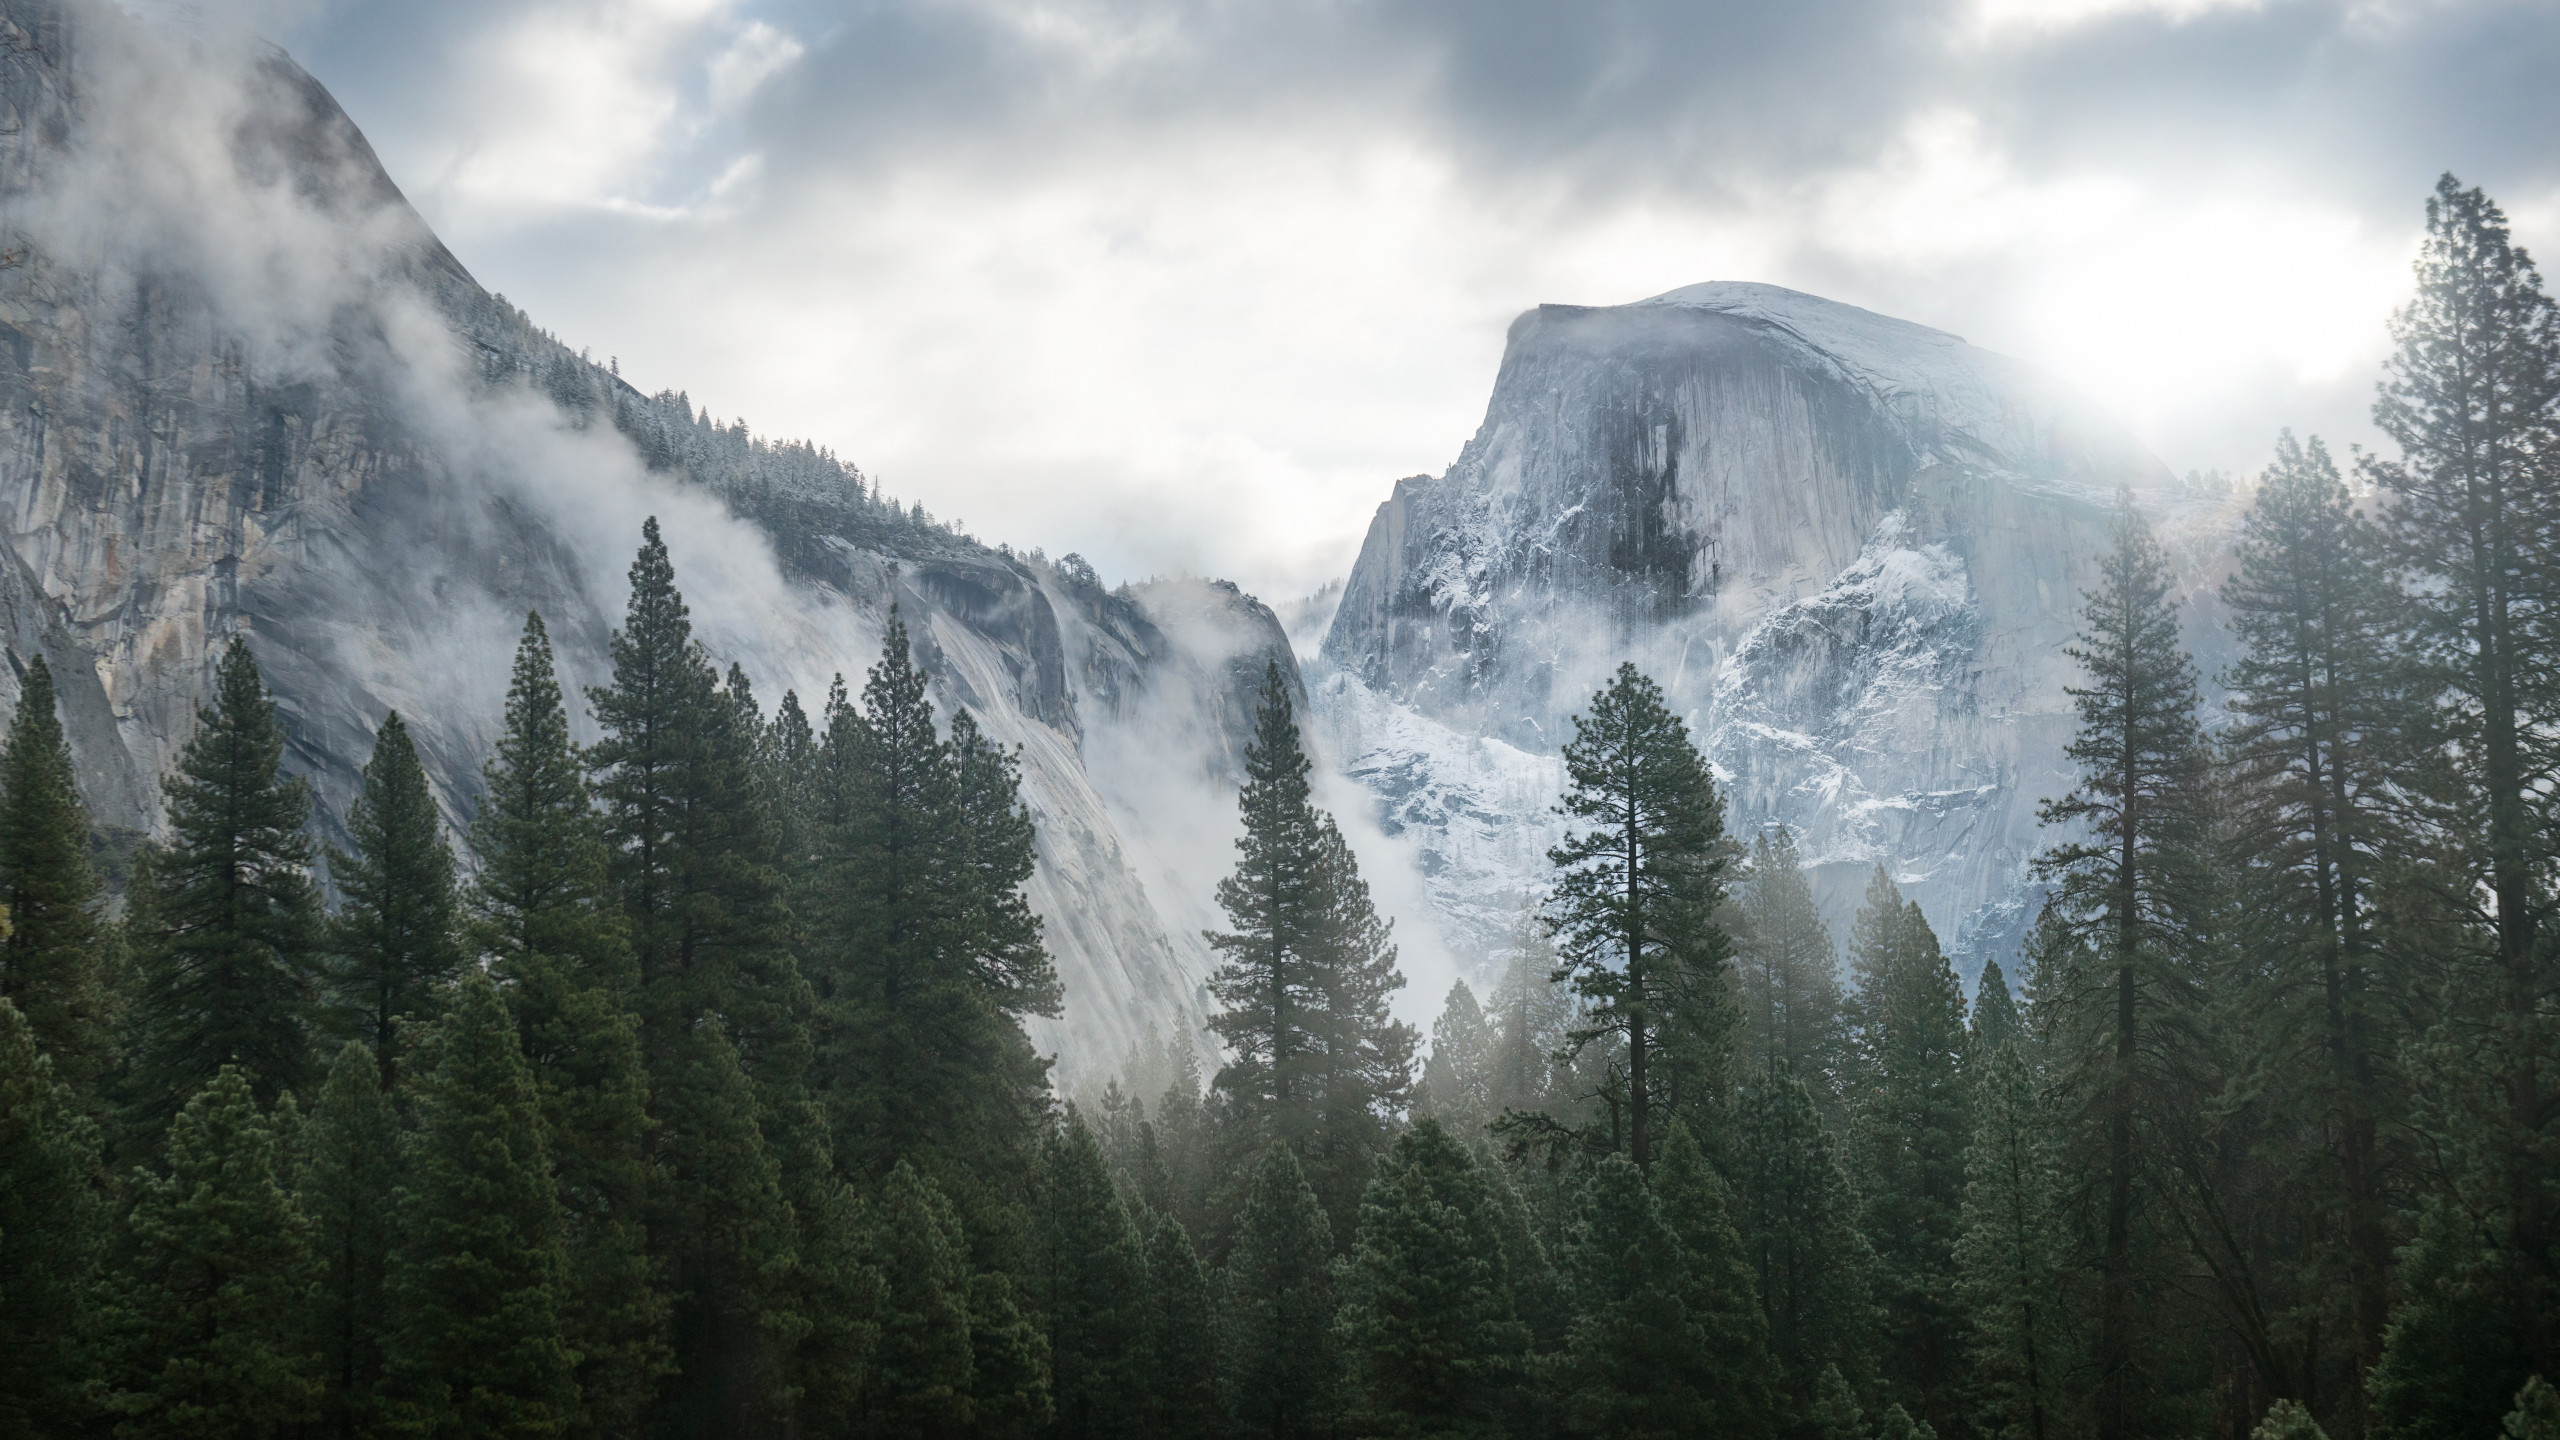 Yosemite là một trong những nơi đẹp nhất trên thế giới. Với hình nền rừng sống động này, bạn sẽ được phép tận hưởng những cảnh quan thiên nhiên tuyệt đẹp, với những ngọn núi đồ sộ, những thác nước lớn và những rừng thẳm sâu.